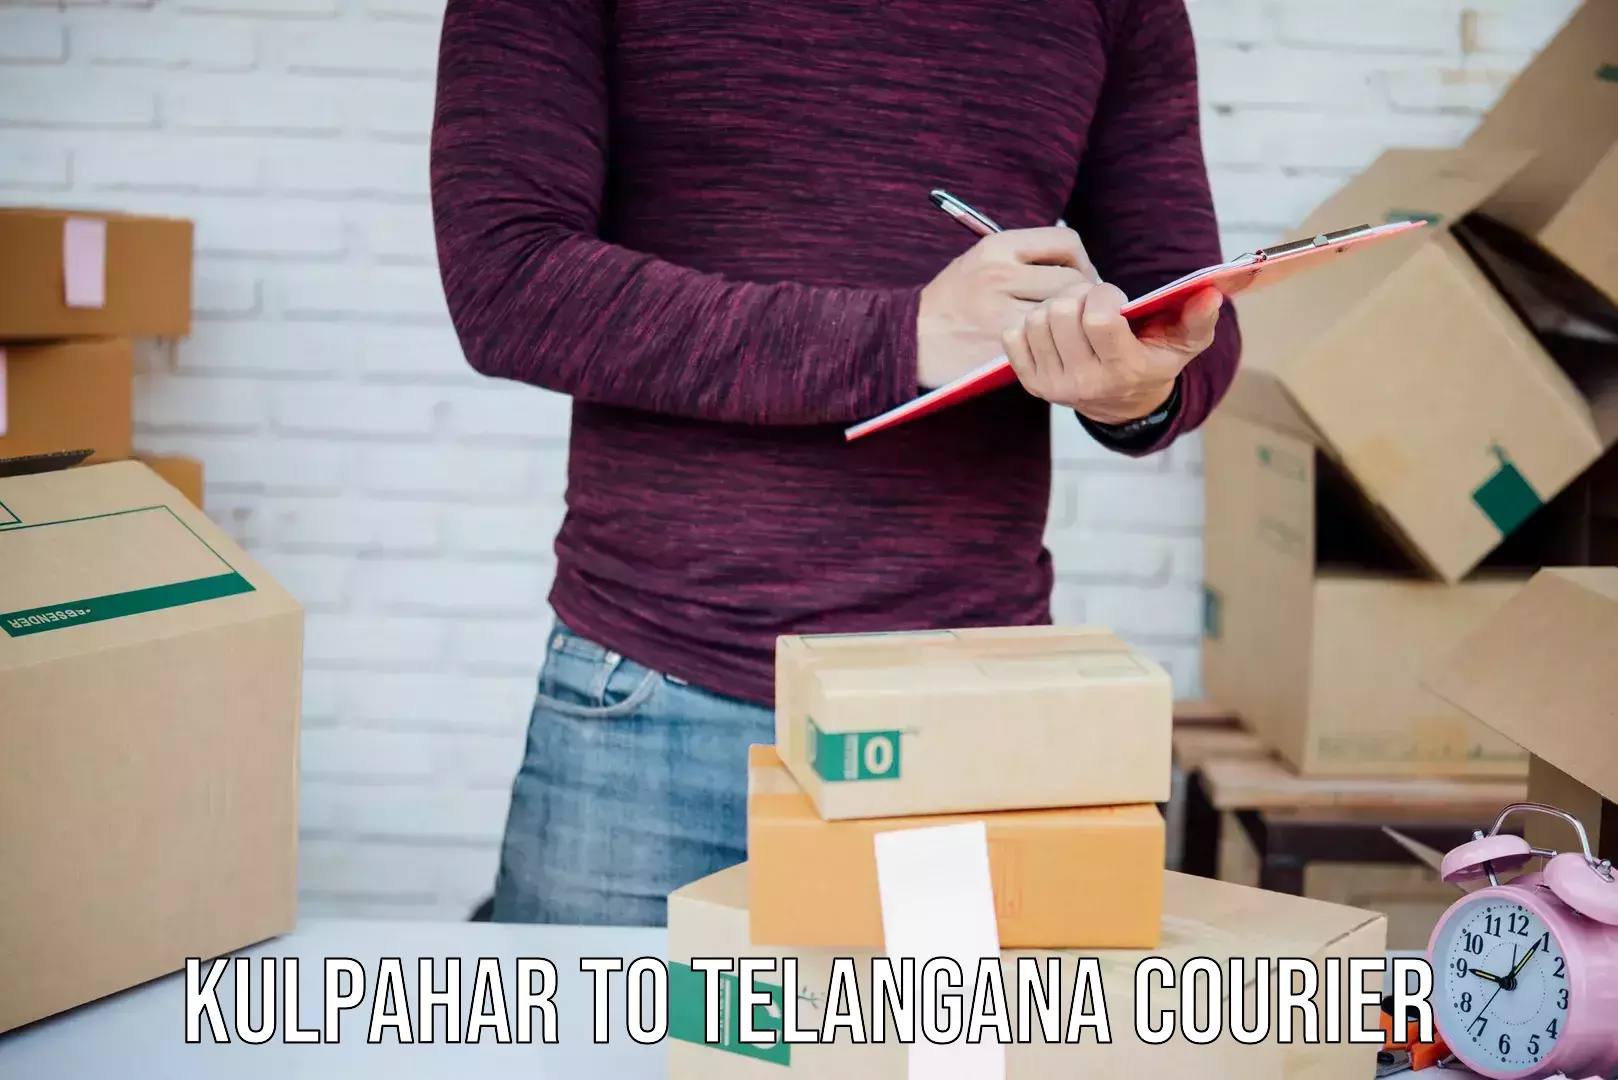 Efficient parcel service Kulpahar to Odela